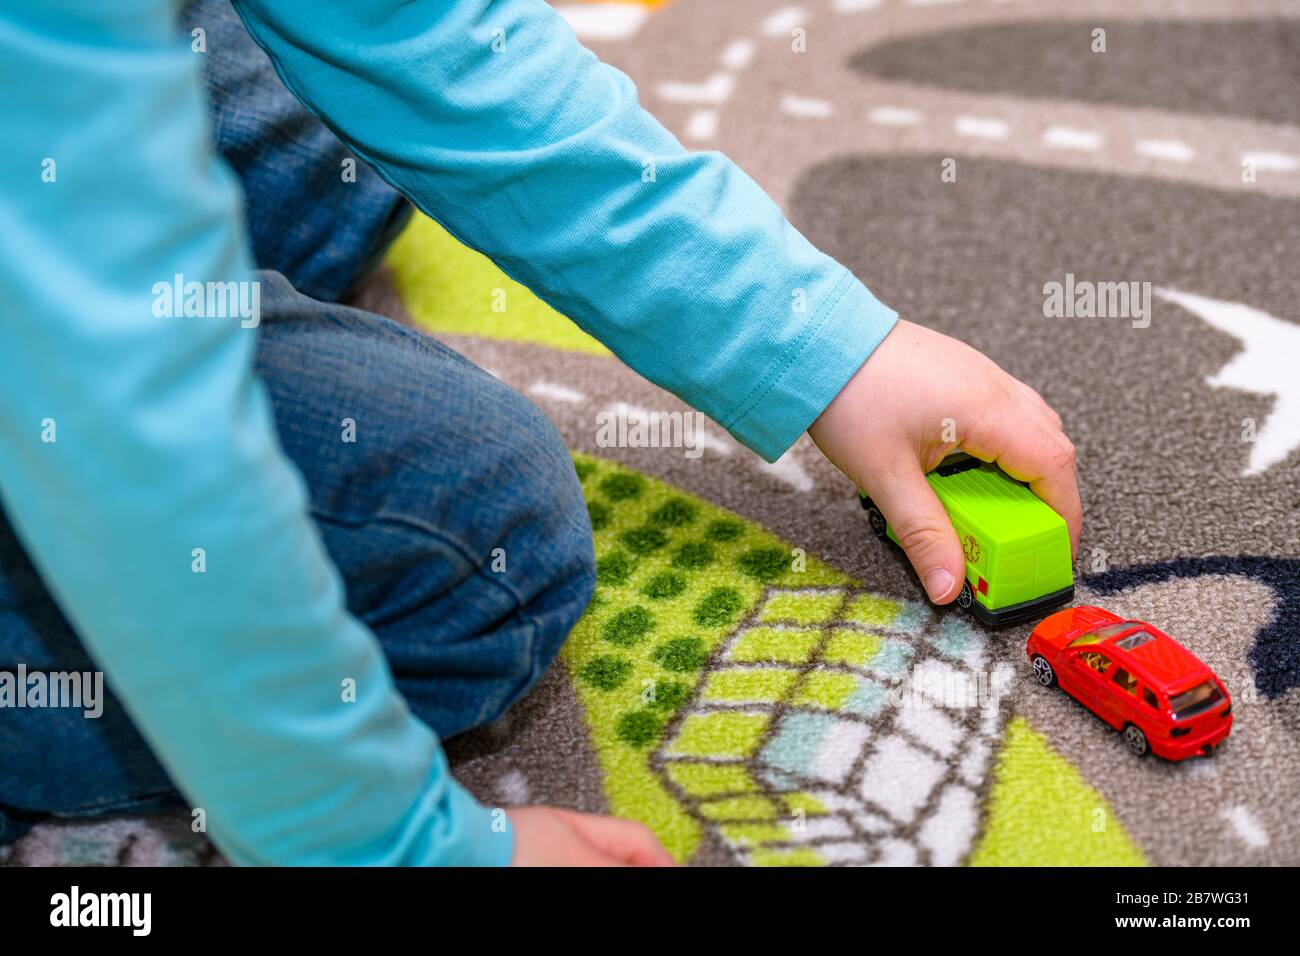 Ragazzo di cinque anni che gioca e allineano le auto giocattolo su un tappetino da gioco con le strade. Il ragazzo è vestito di jeans blu e tiene un giocattolo ambulanza. Foto Stock